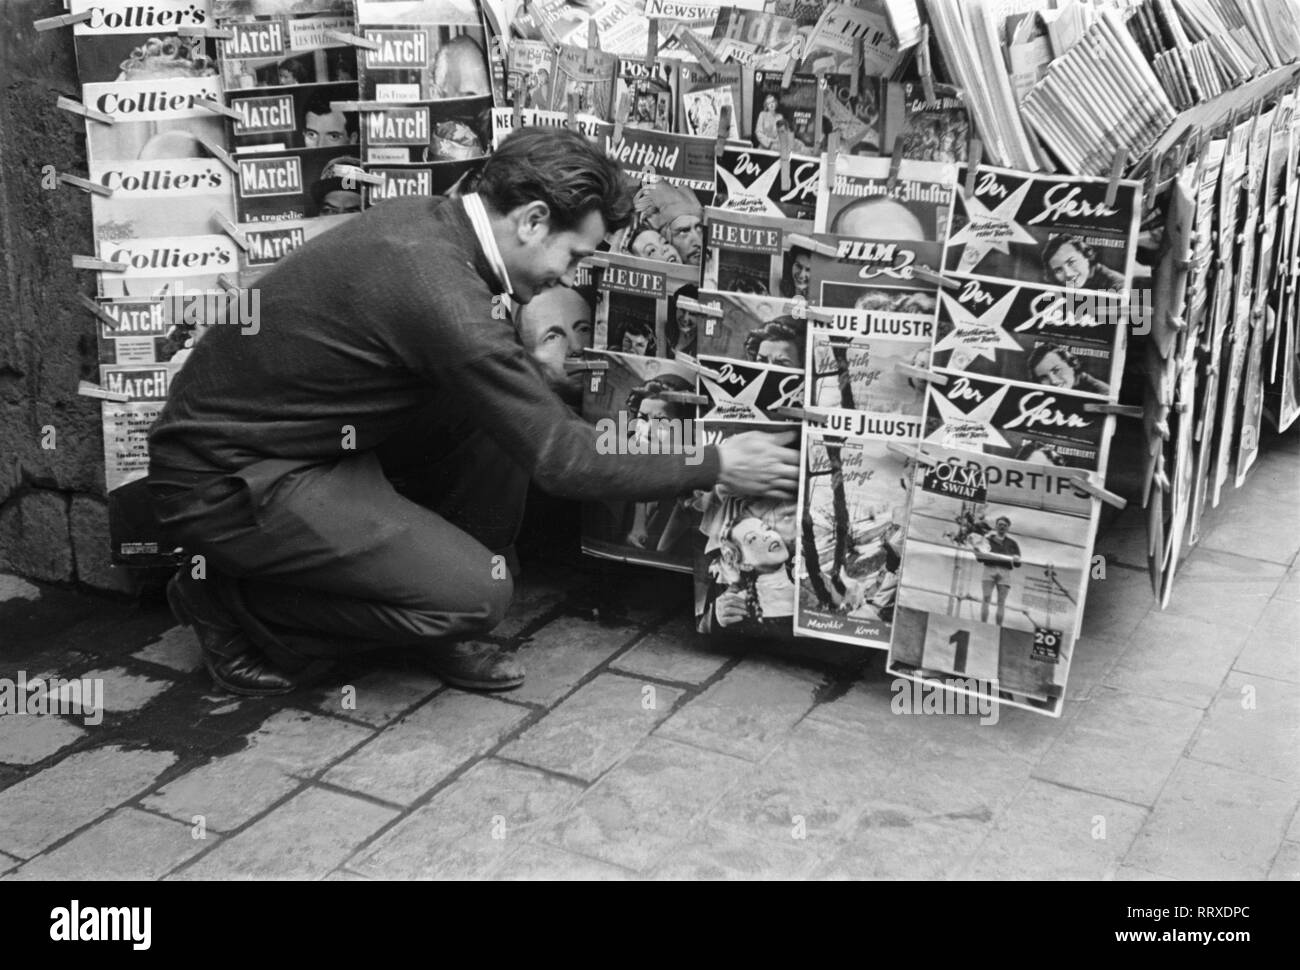 France - Geschäft, Kiosk, Zeitschriften, Mann, Kunde, Stern, Colliers, Paris Match 1960er, 1960s Stock Photo